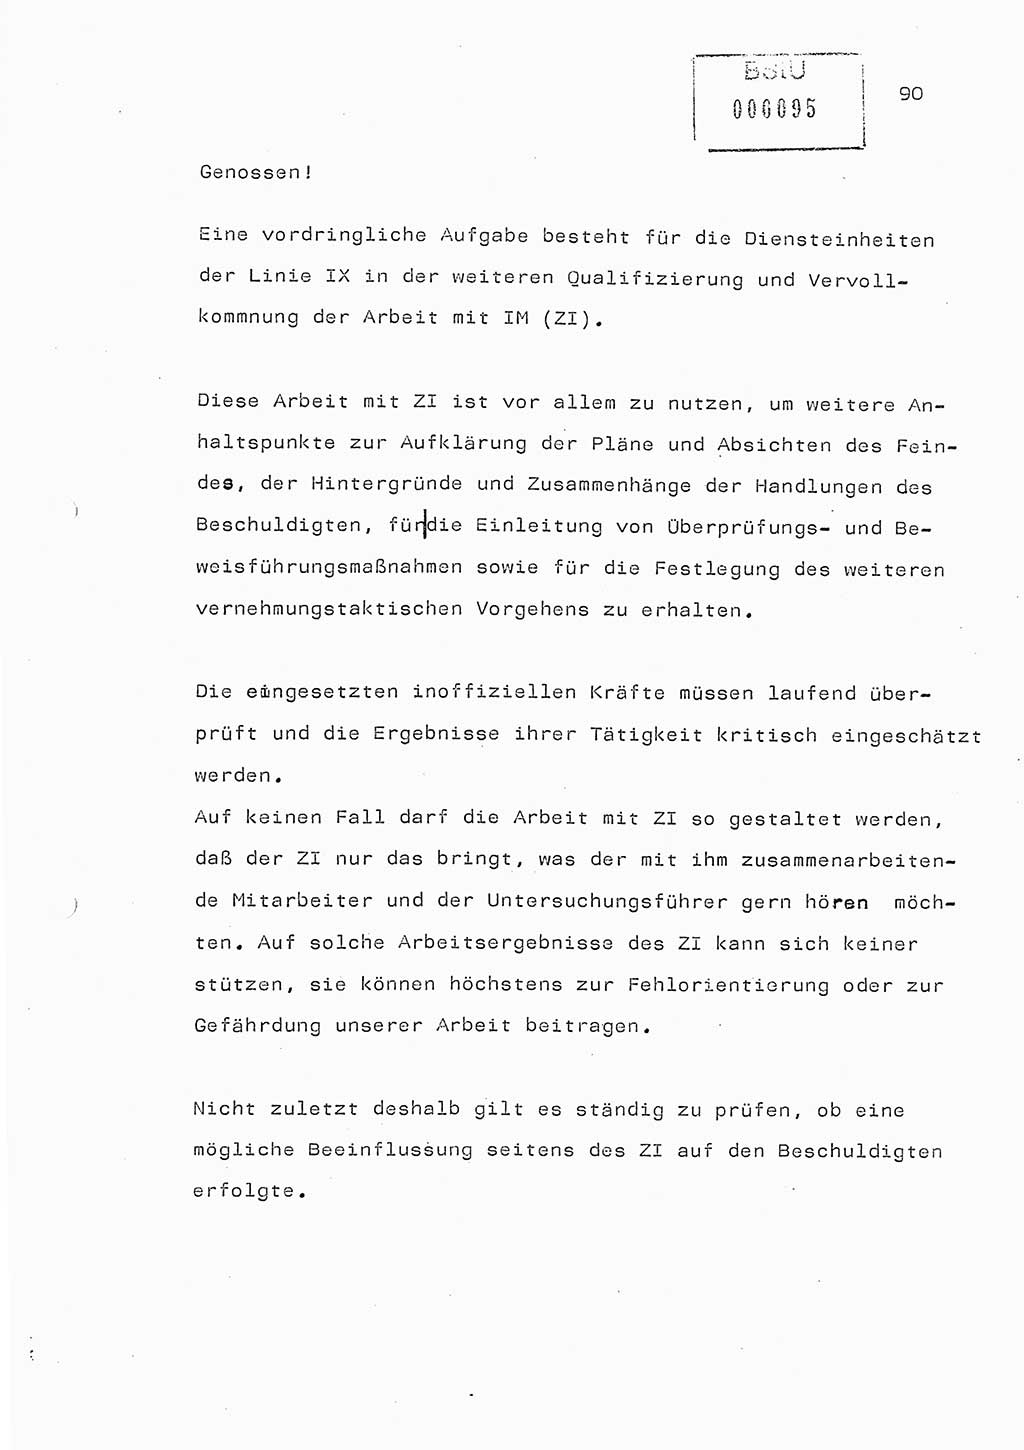 Referat (Generaloberst Erich Mielke) auf der Zentralen Dienstkonferenz am 24.5.1979 [Ministerium für Staatssicherheit (MfS), Deutsche Demokratische Republik (DDR), Der Minister], Berlin 1979, Seite 90 (Ref. DK DDR MfS Min. /79 1979, S. 90)